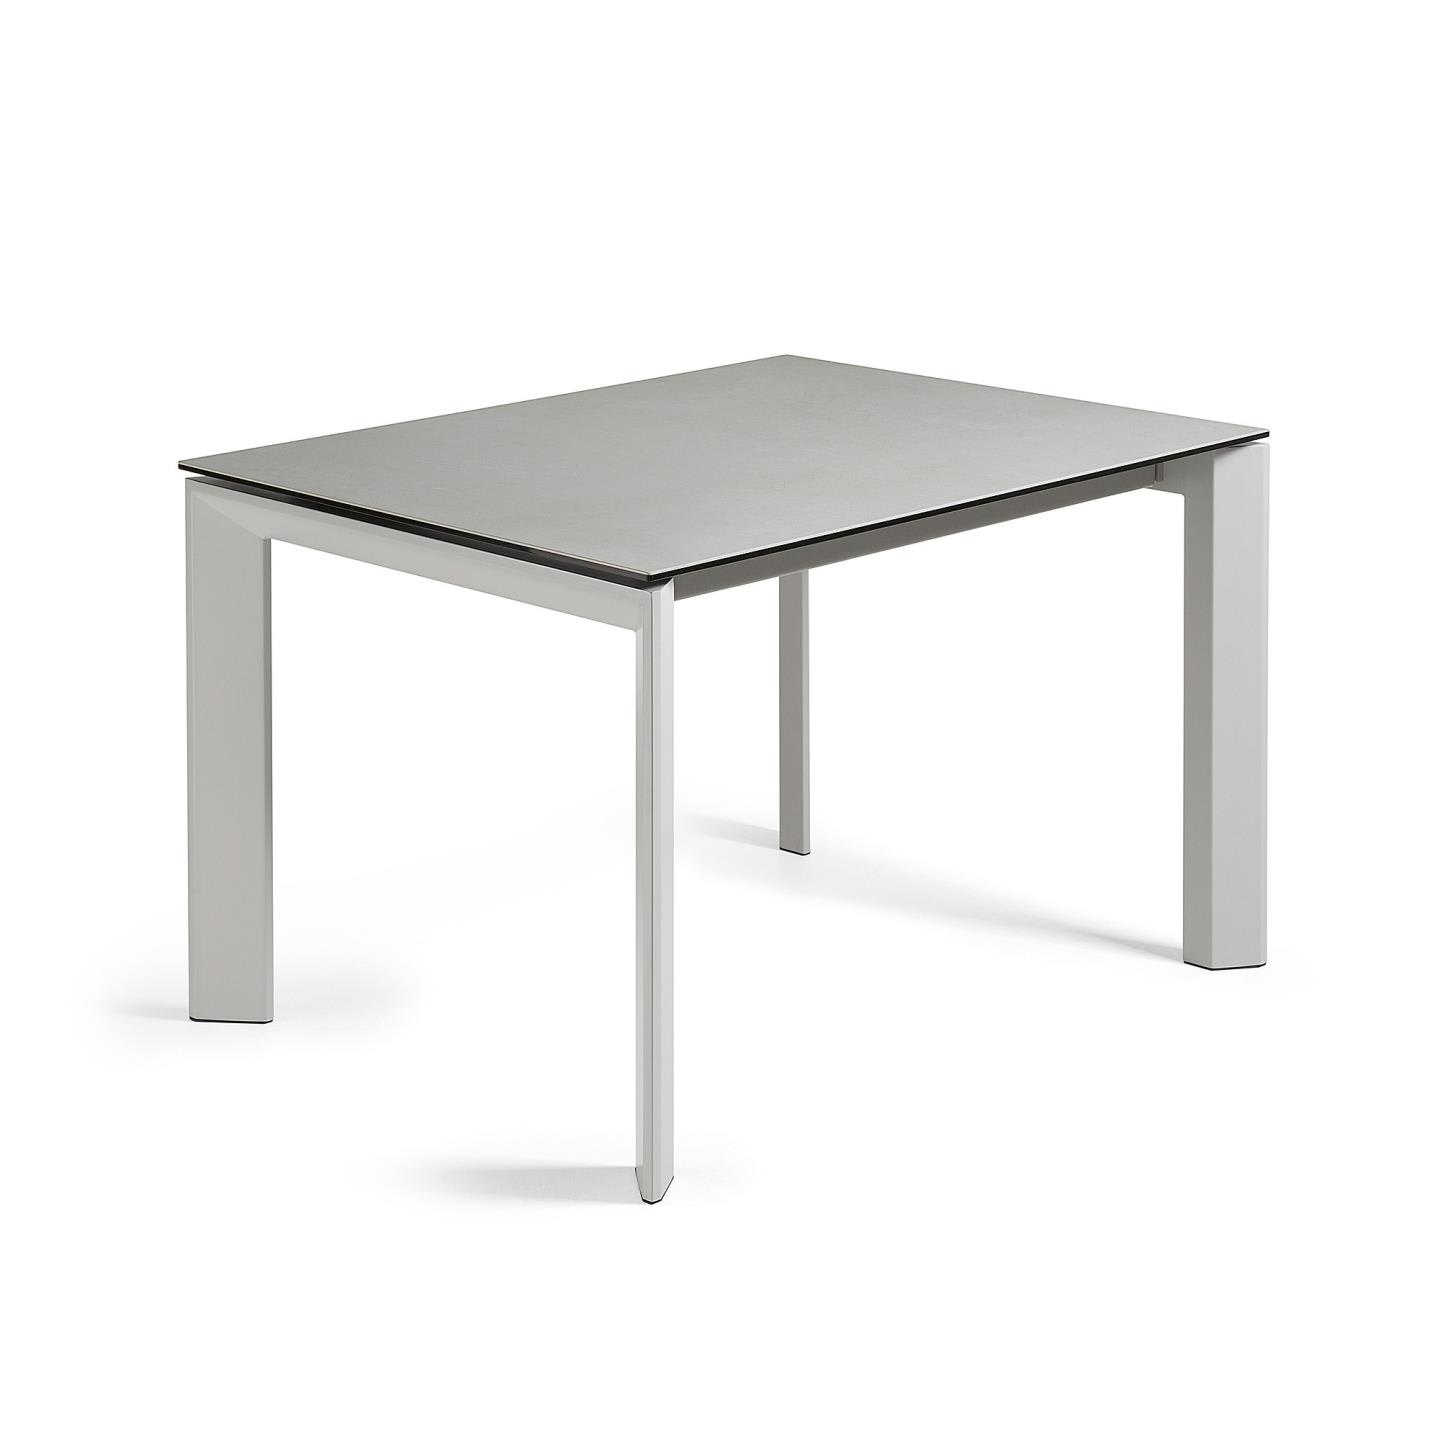 Axis kihúzható kerámia asztal Hydra Plomo befejezéssel és szürke acéllábakkal 120 (180) cm